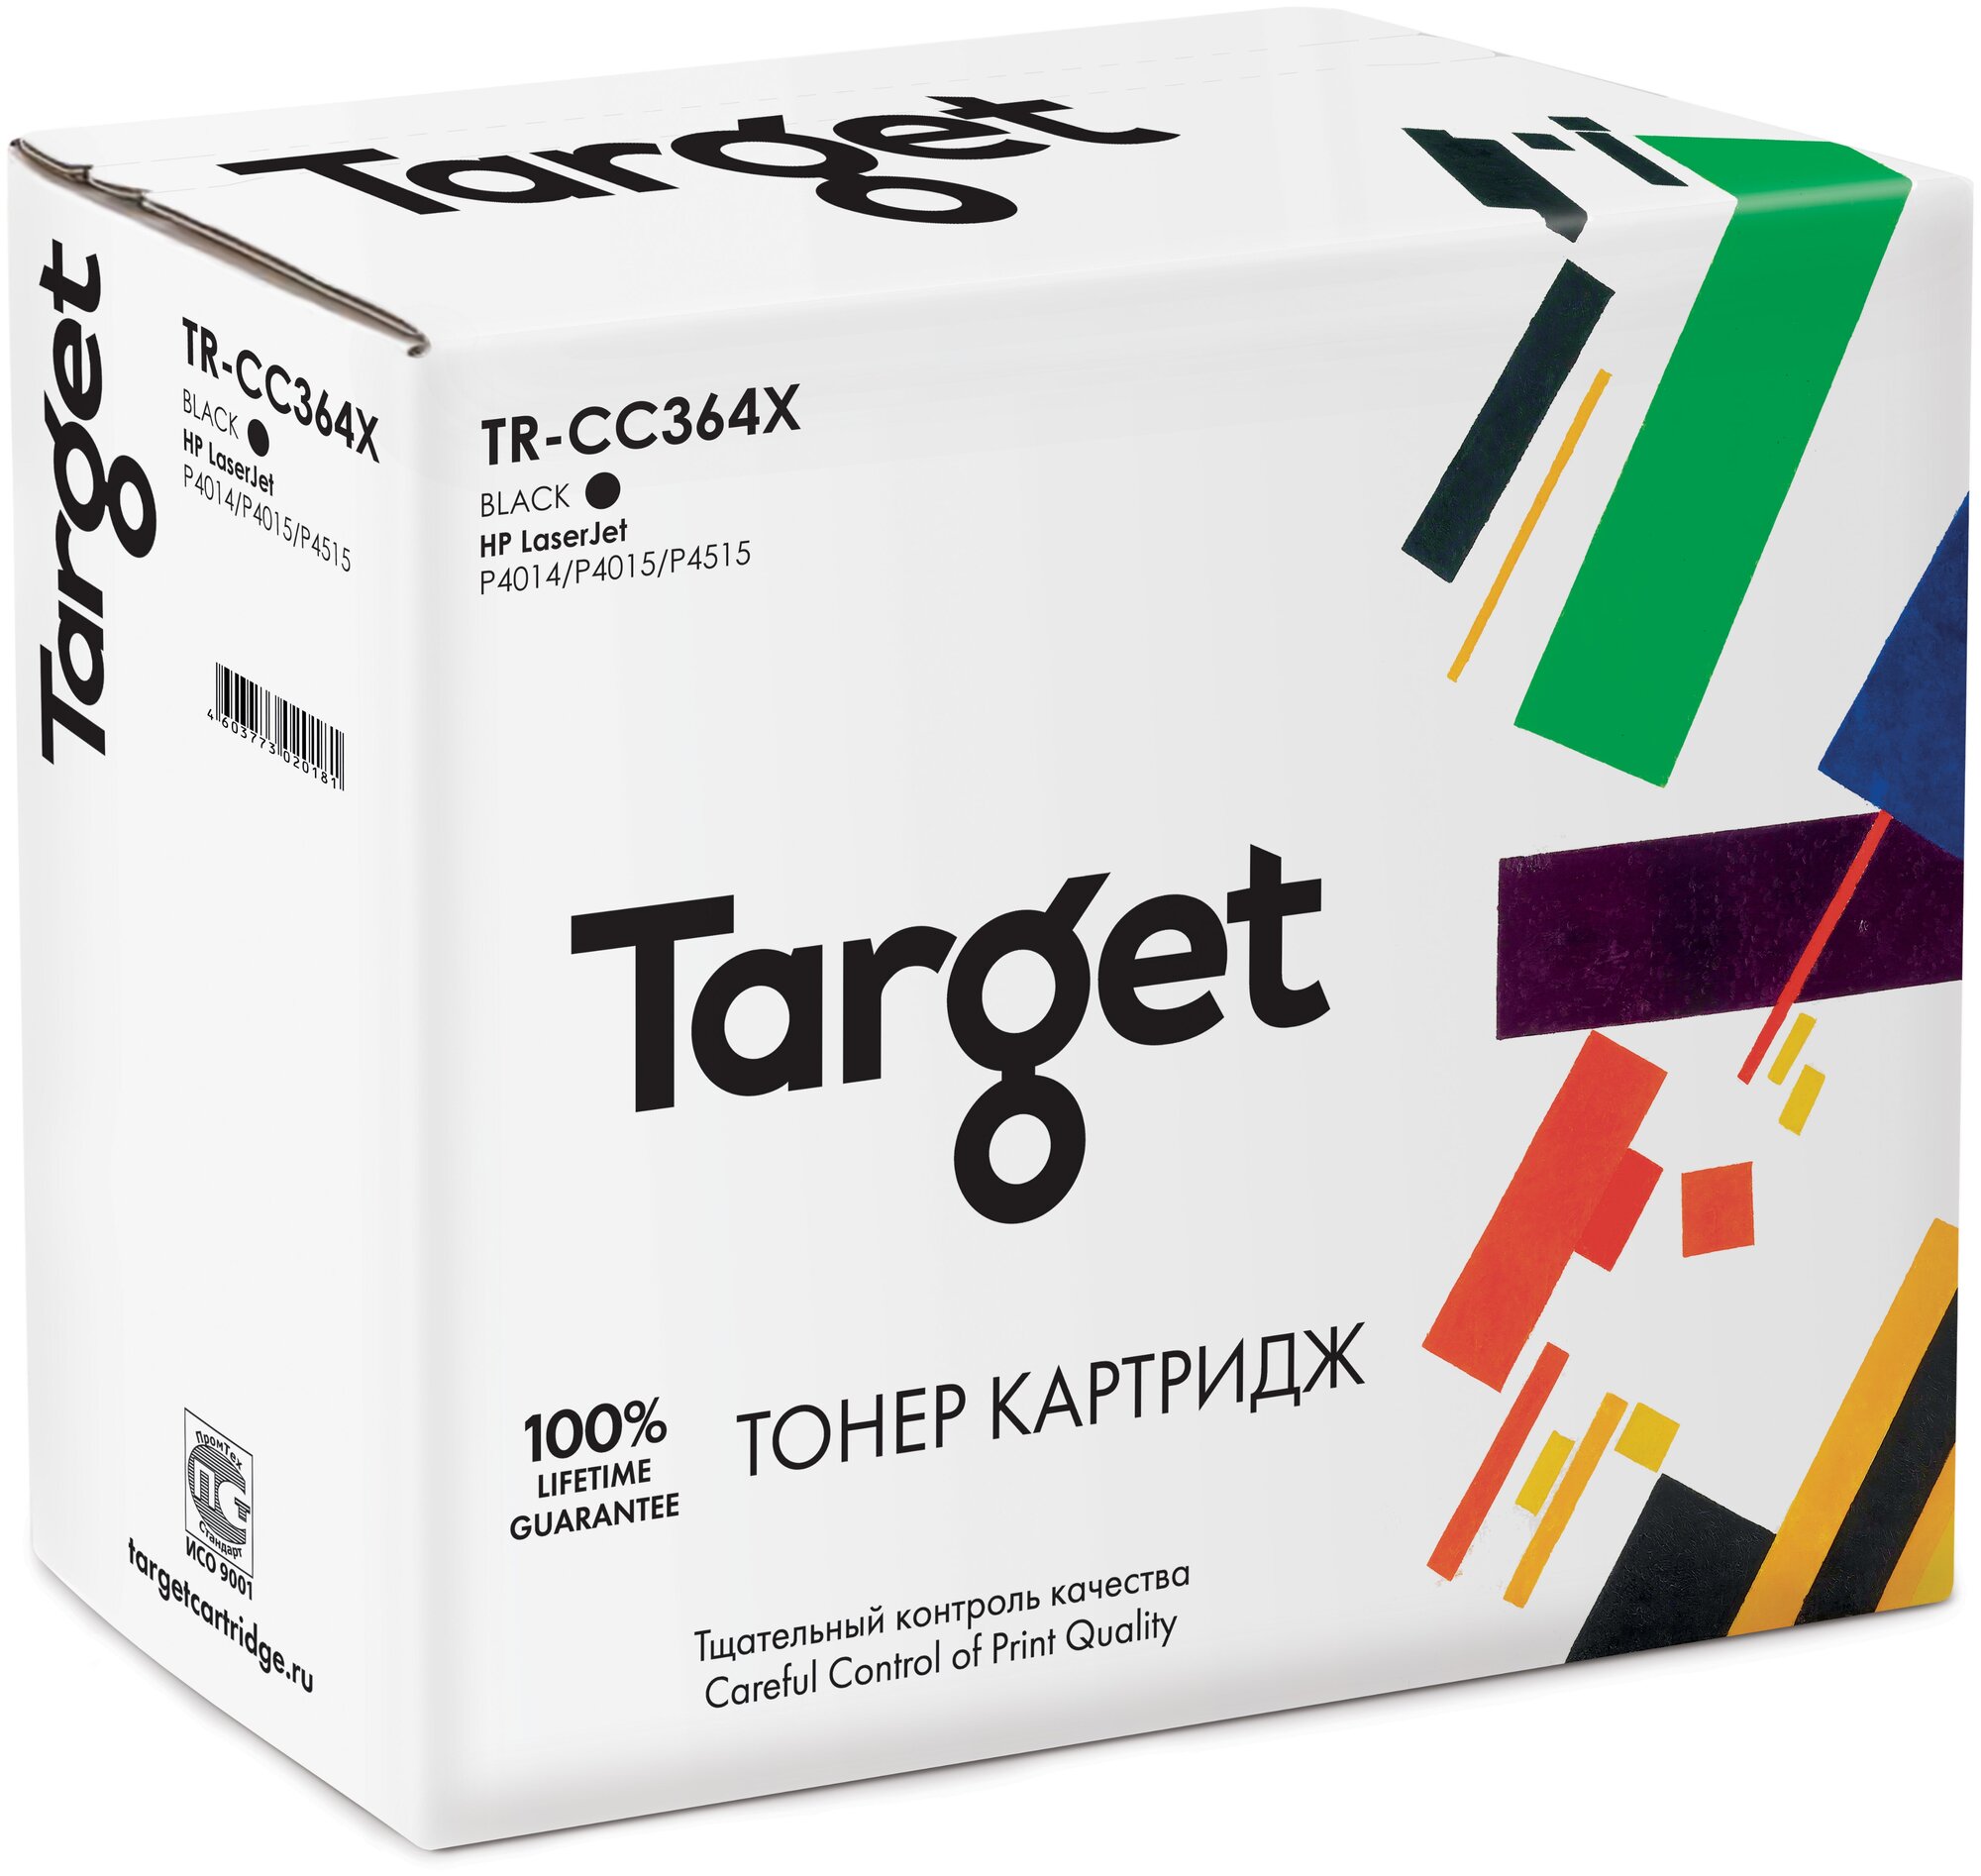 Картридж Target CC364X, черный, для лазерного принтера, совместимый